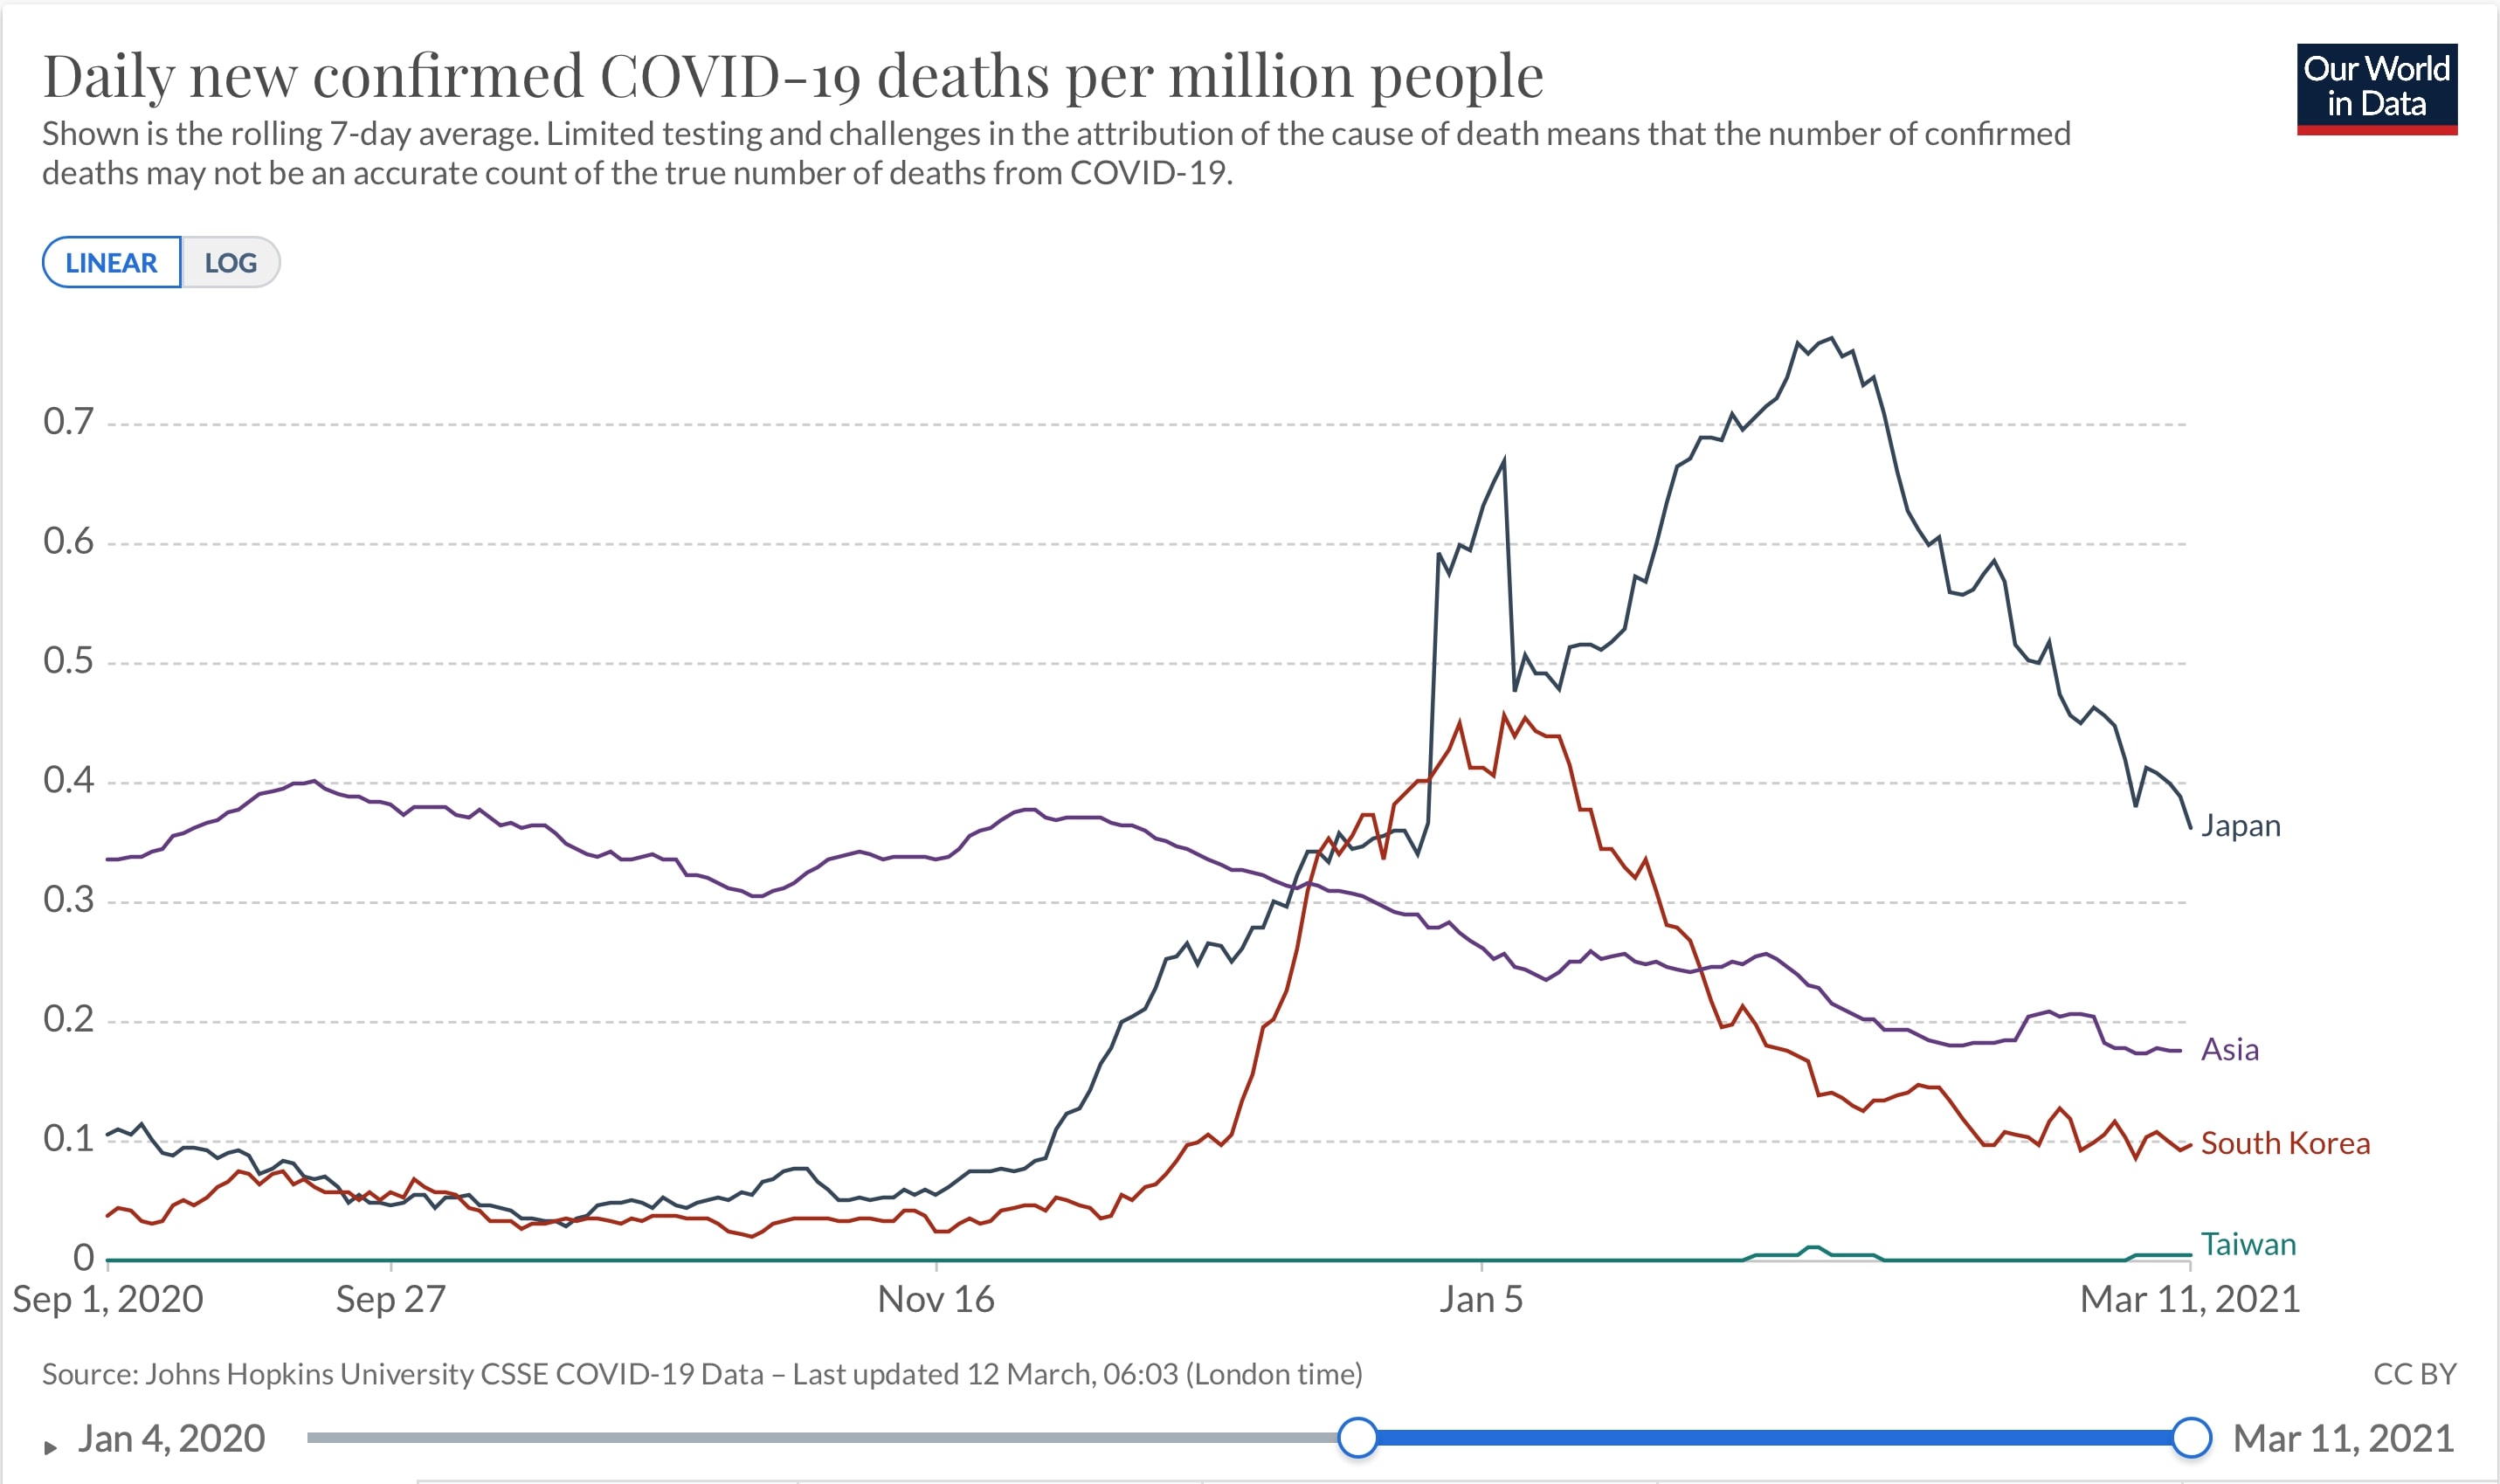 日本、韓国、台湾およびアジア全体での百万人あたり日毎死亡者数の推移(ppm 7日移動平均 線形)2020/09/01-2021/03/011